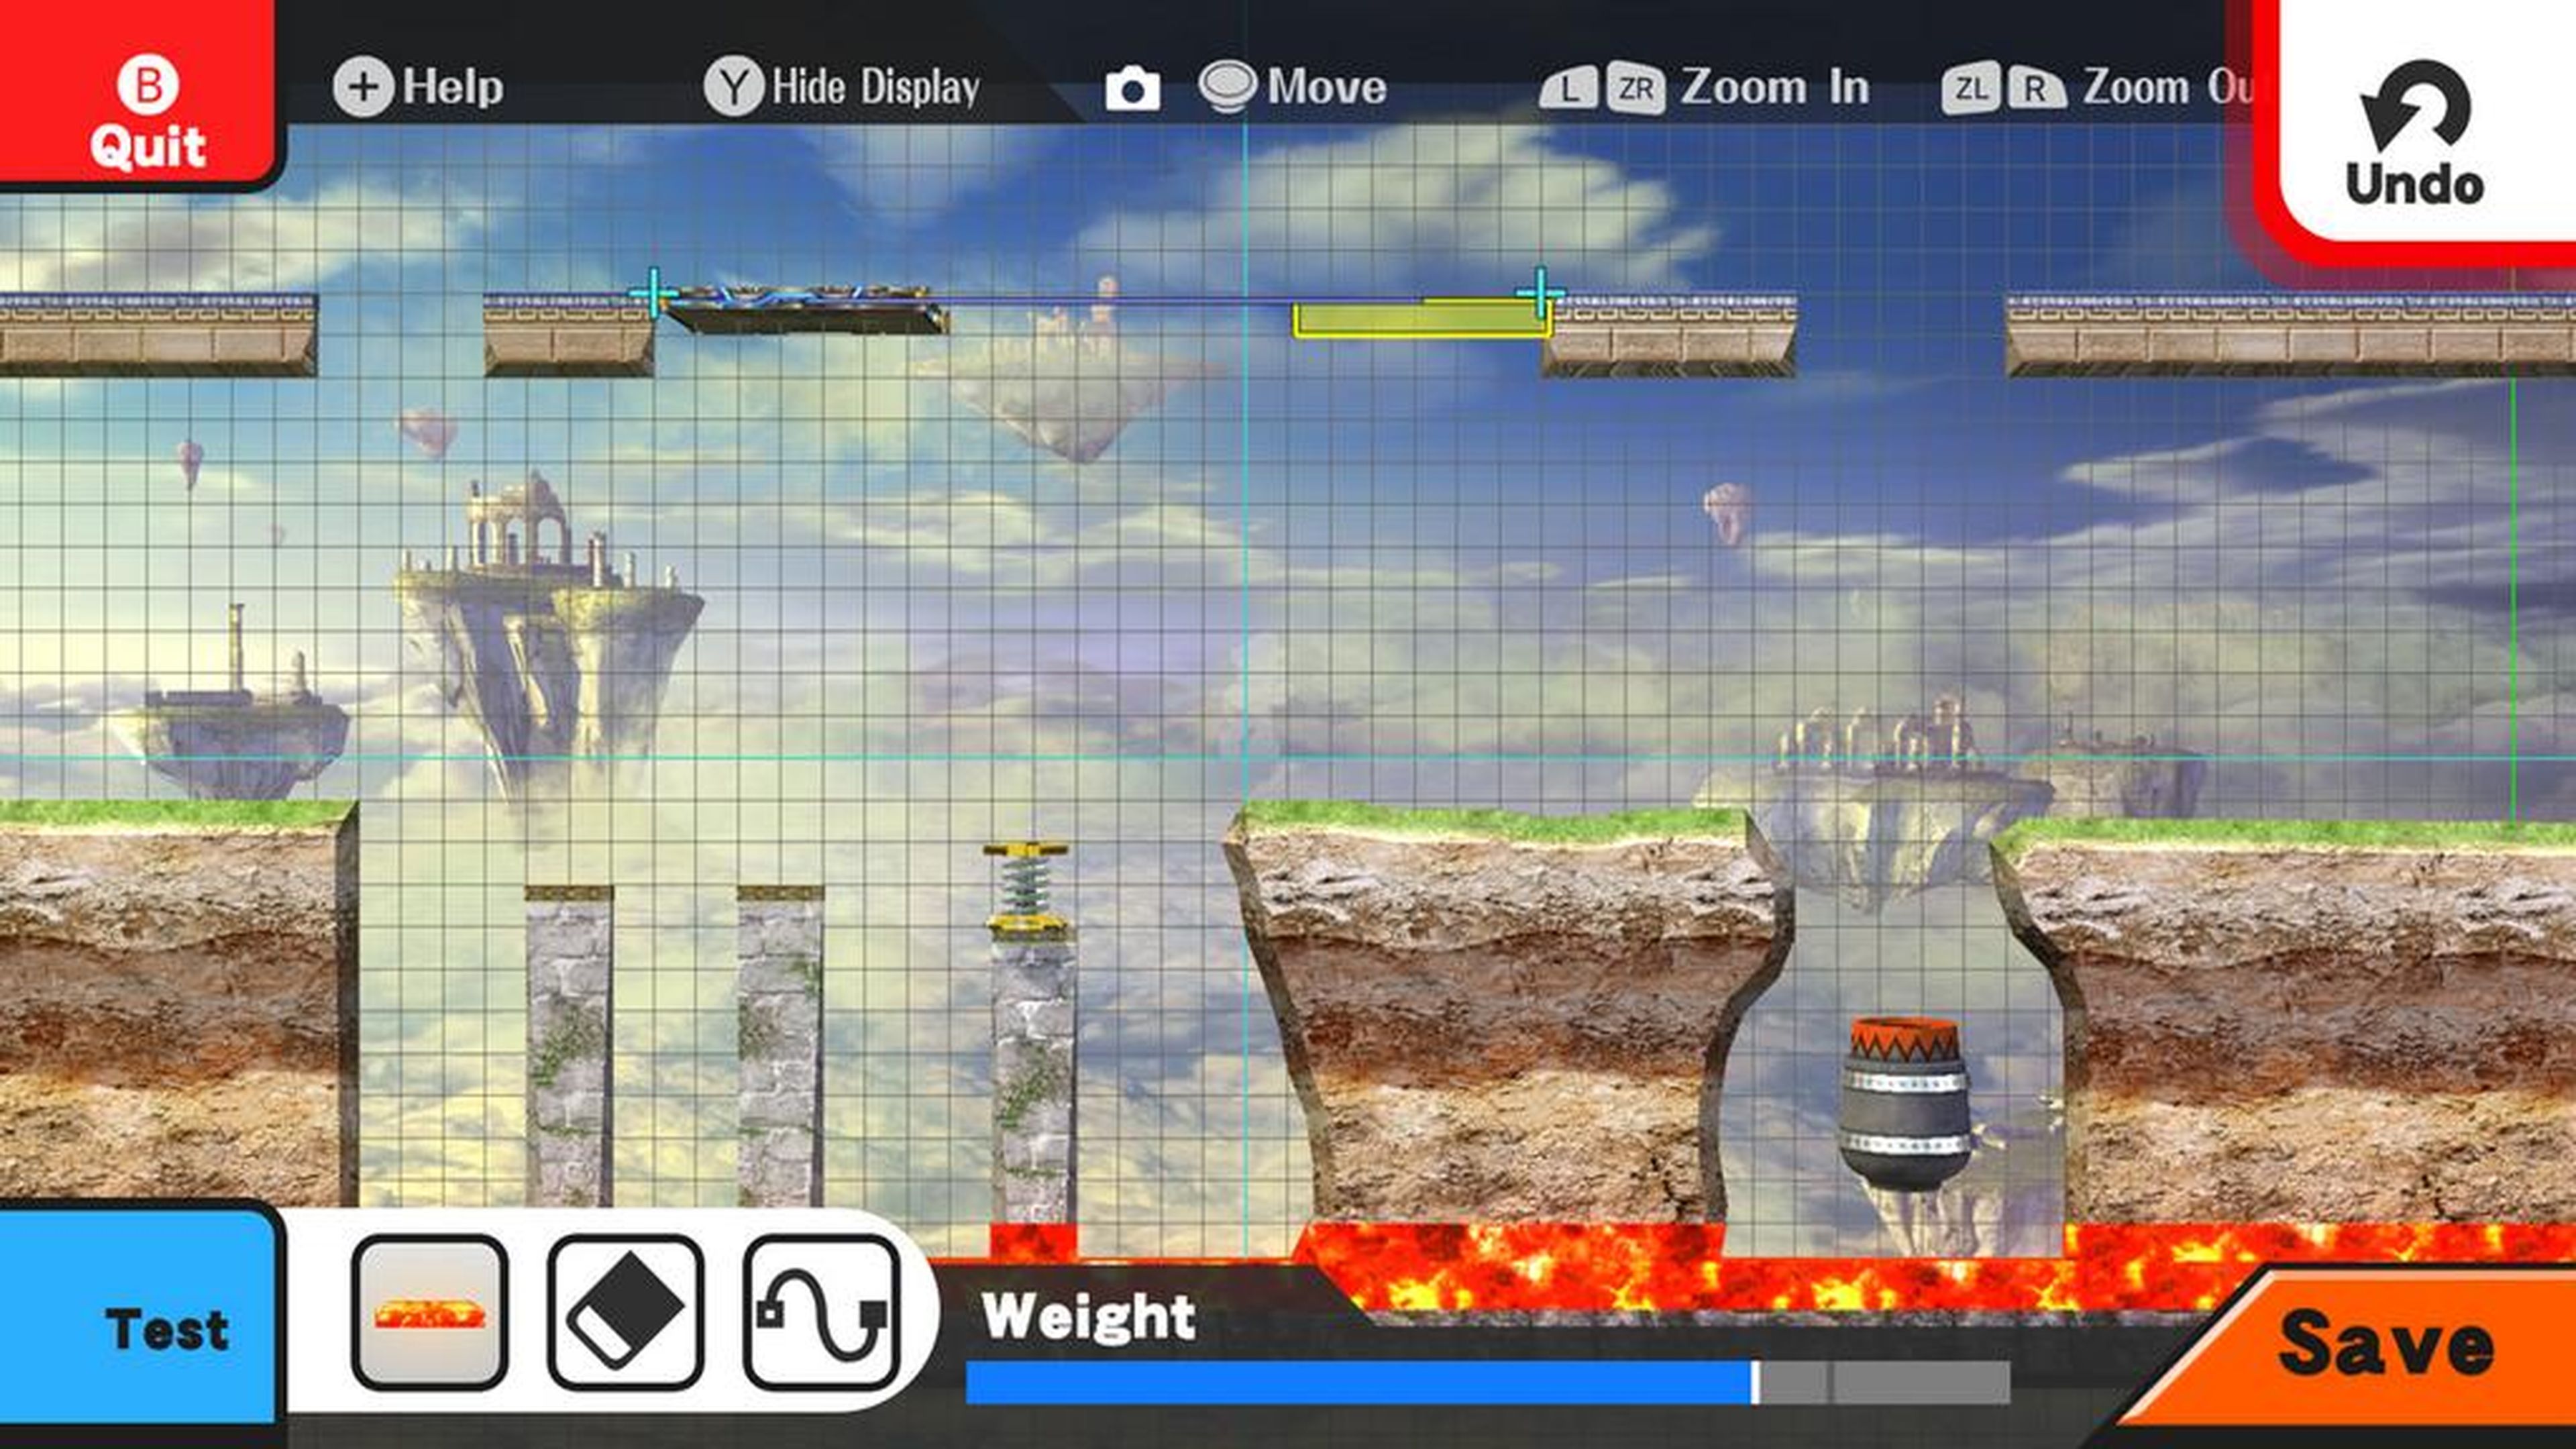 Avance de Super Smash Bros. para Wii U